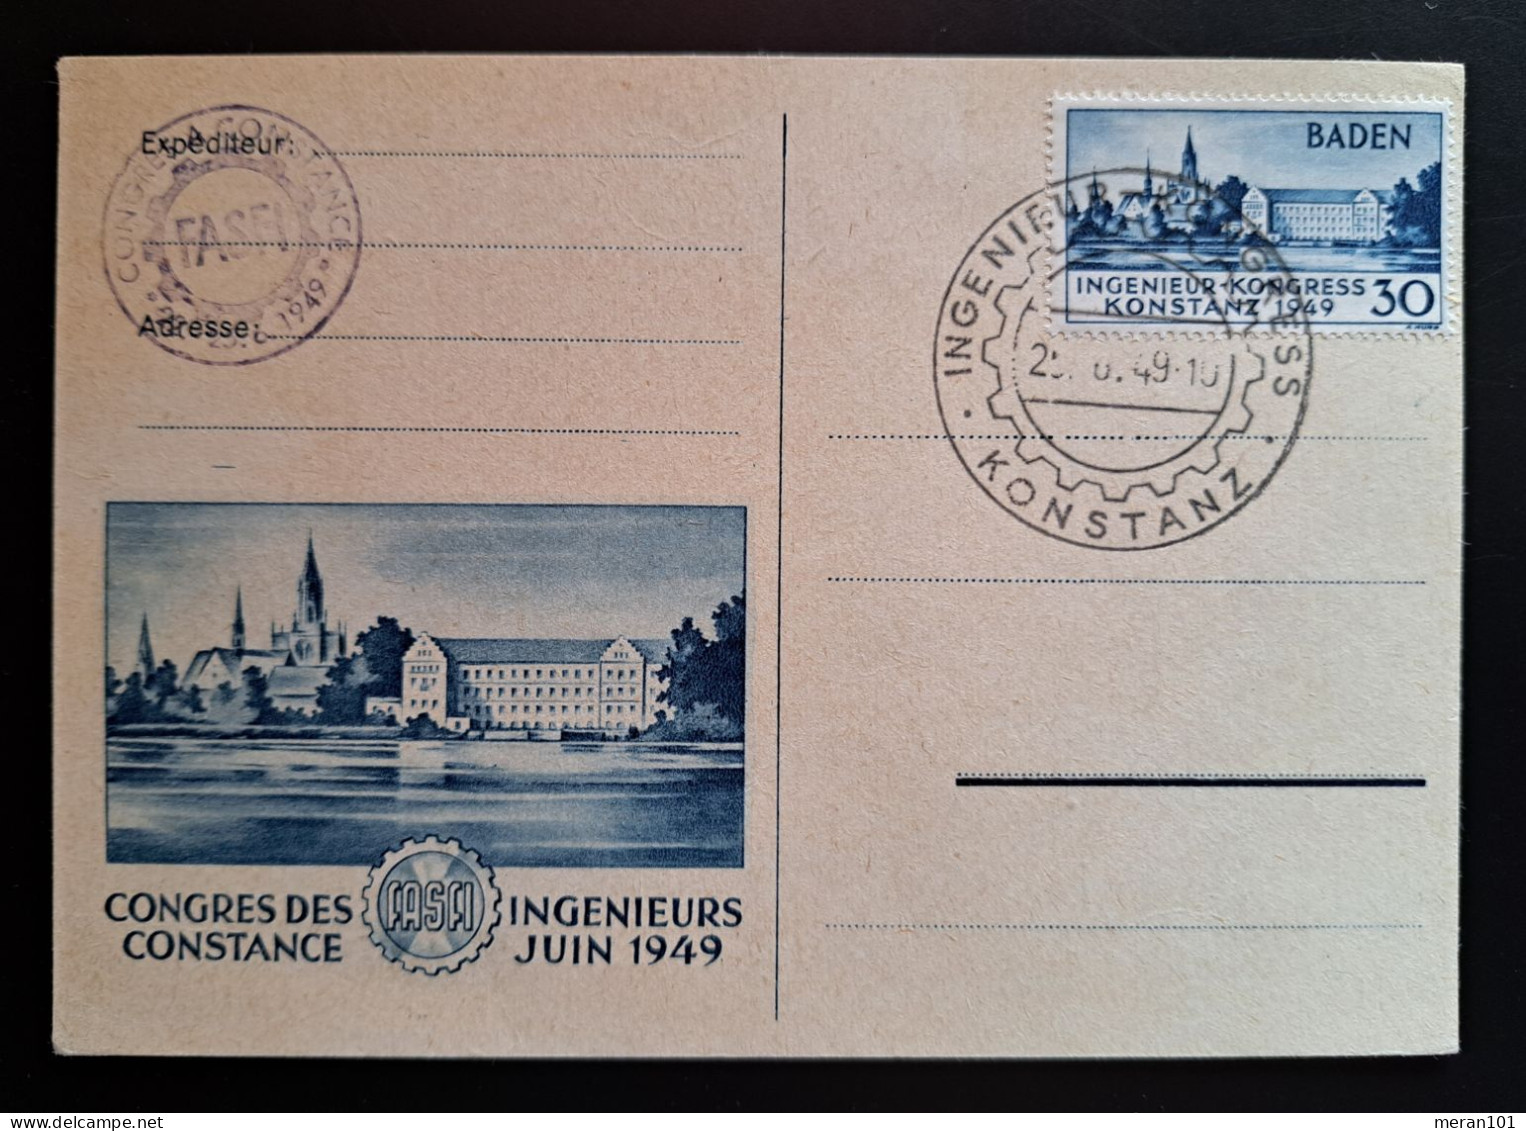 Baden 1949, Postkarte Mi 46 Konstanz Geprüft Schlegel - Baden